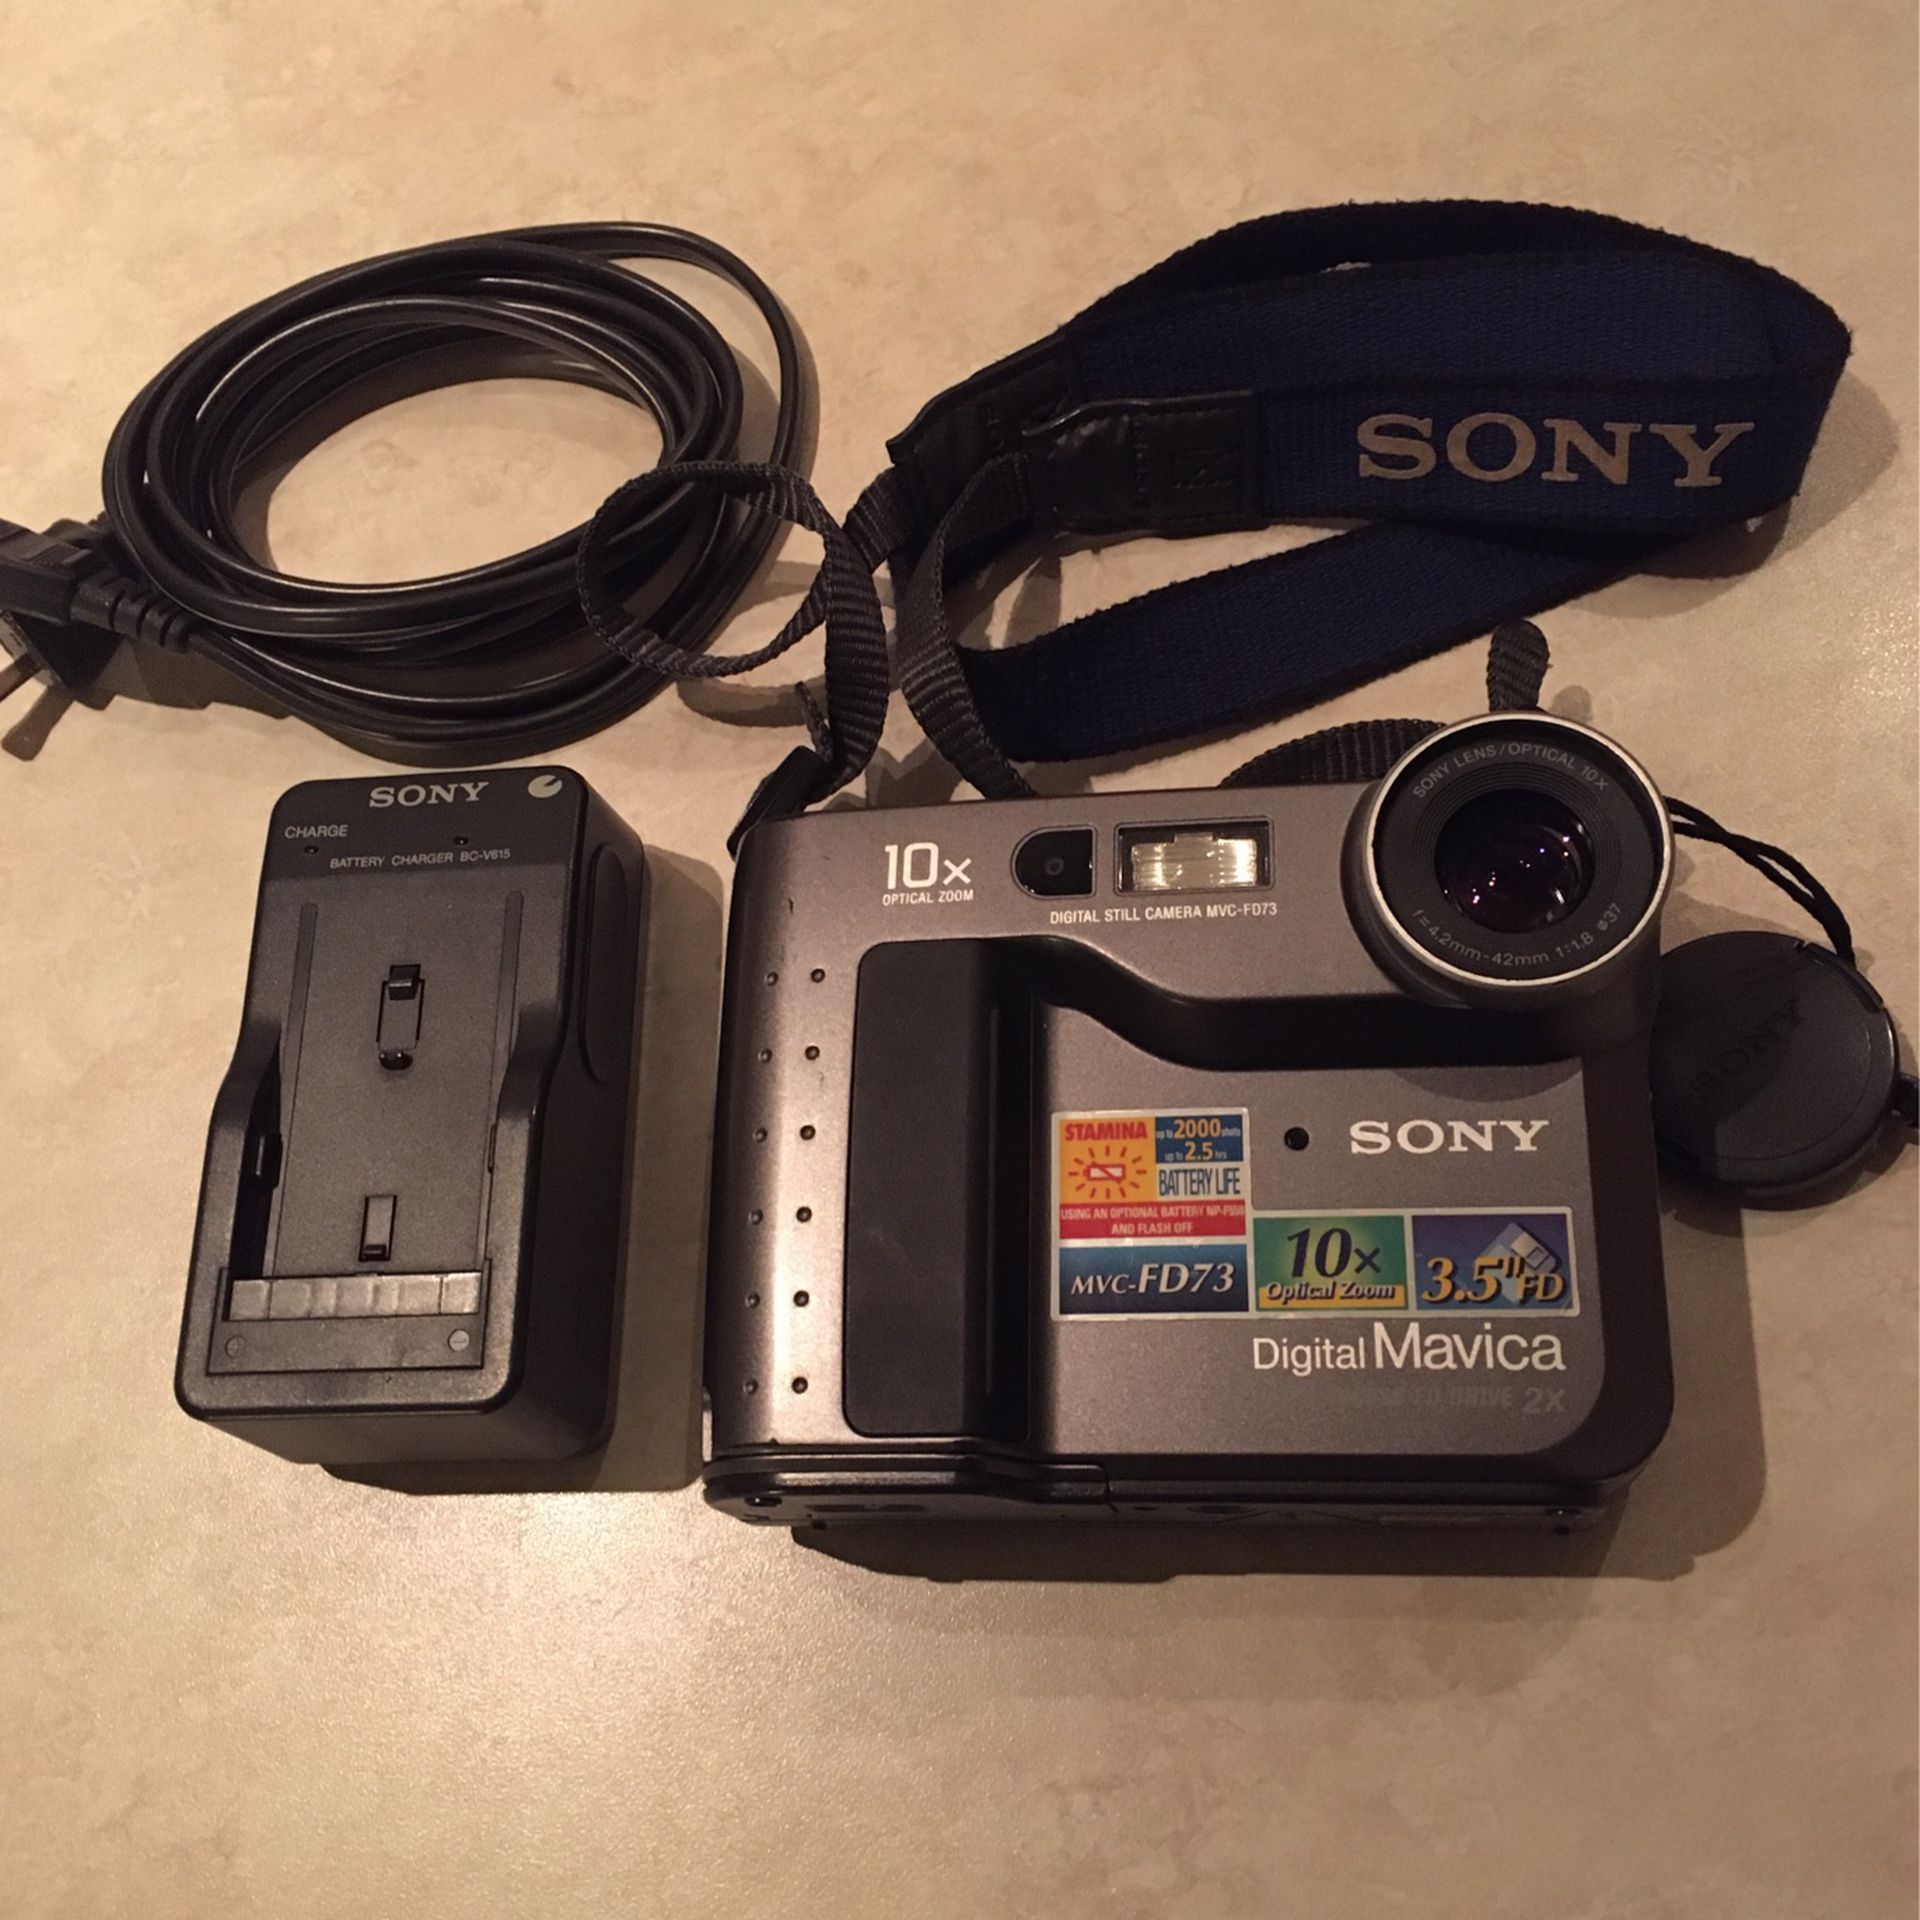 Modern Vintage: Floppy Disk Sony Camera